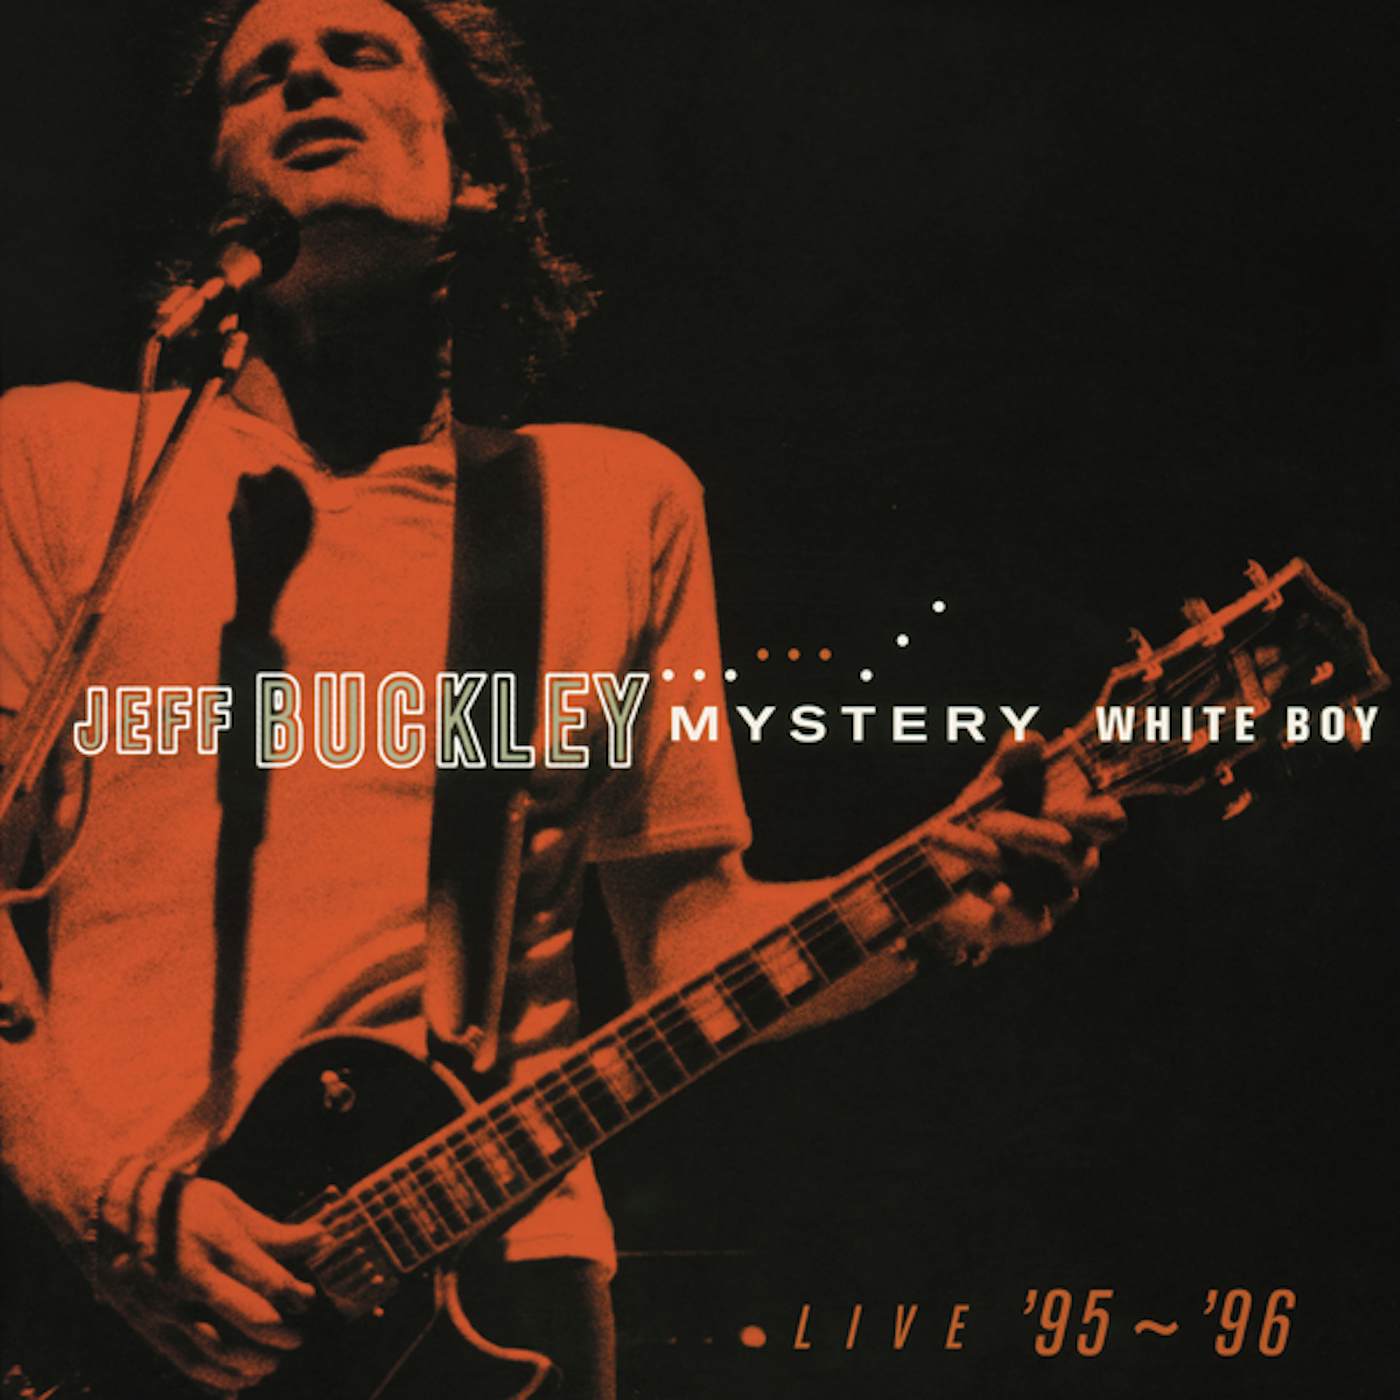 Jeff Buckley Mystery White Boy Vinyl Record